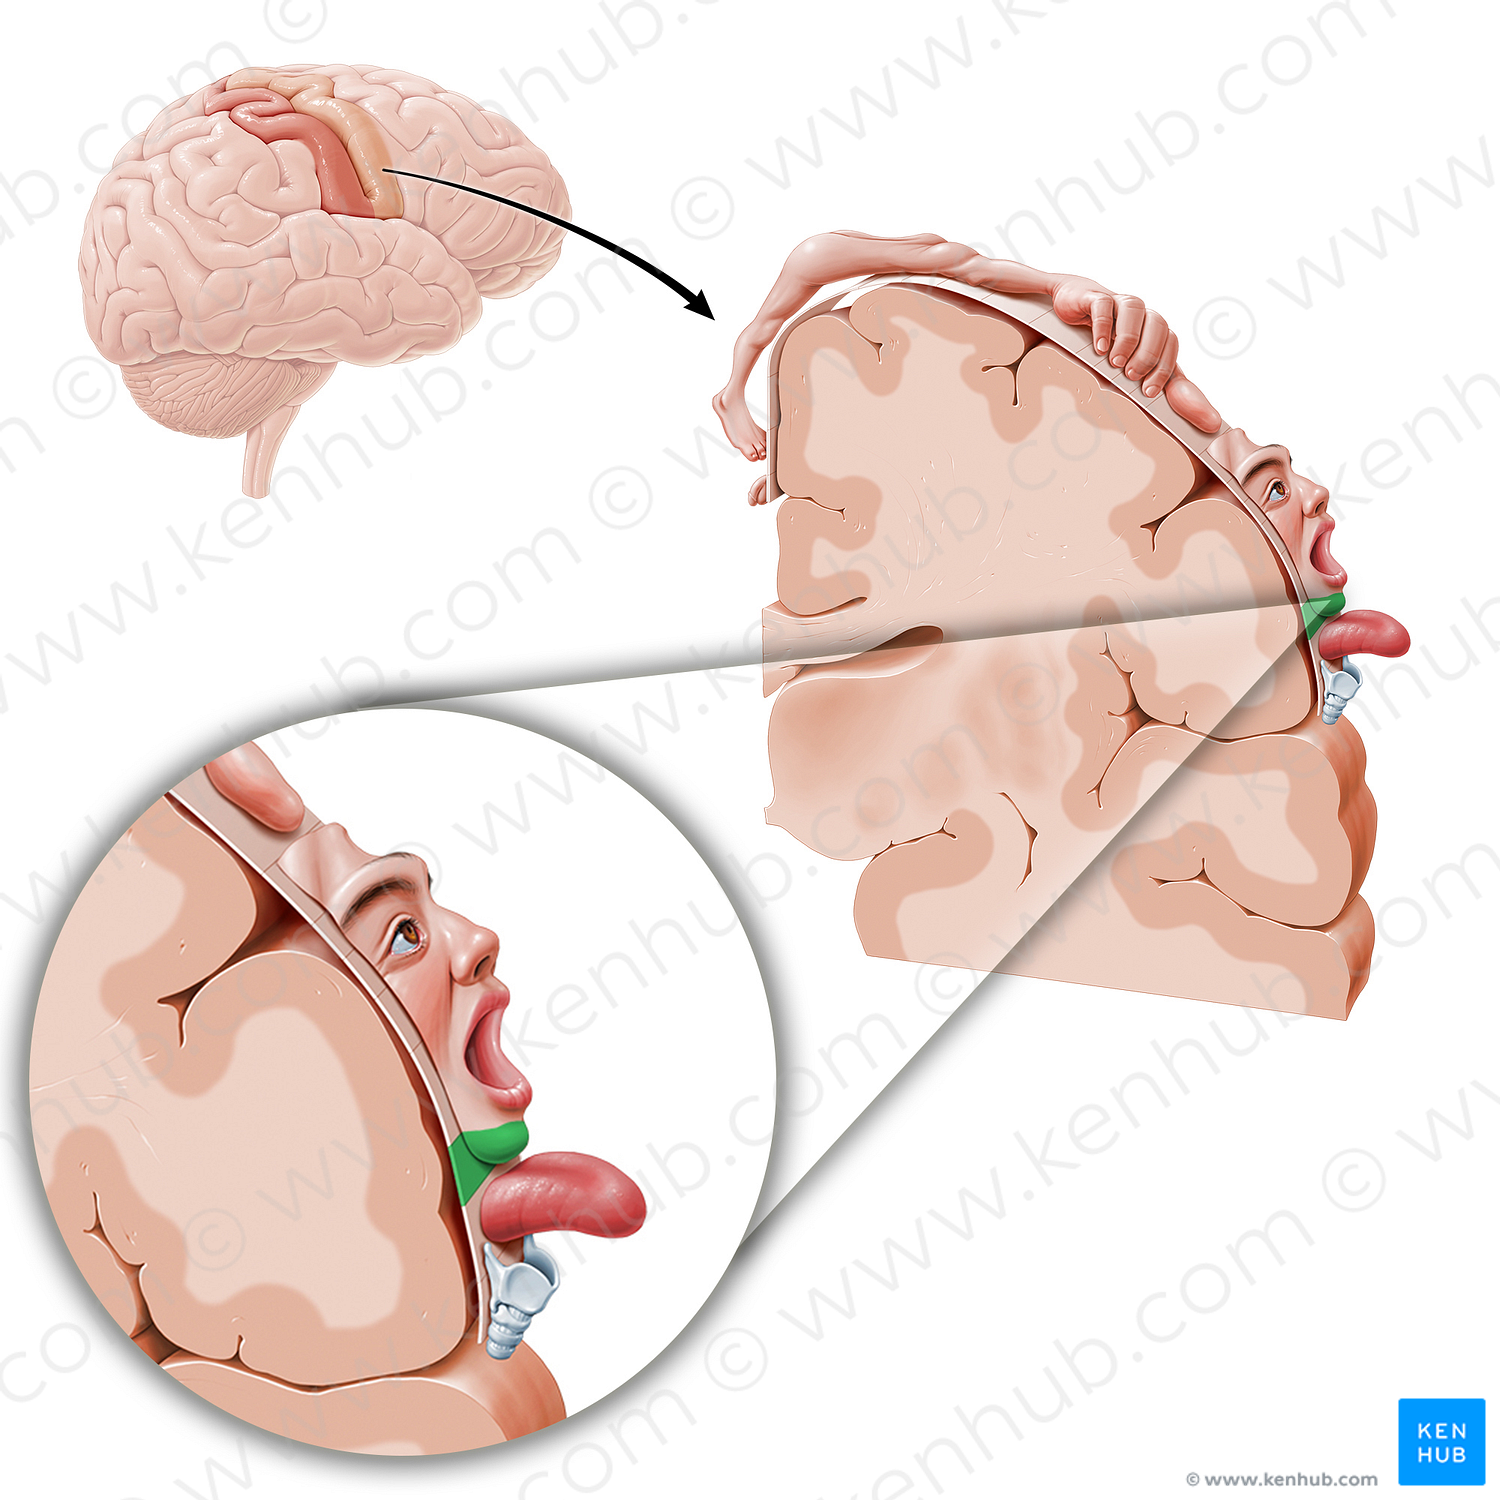 Motor cortex of chin (#11069)